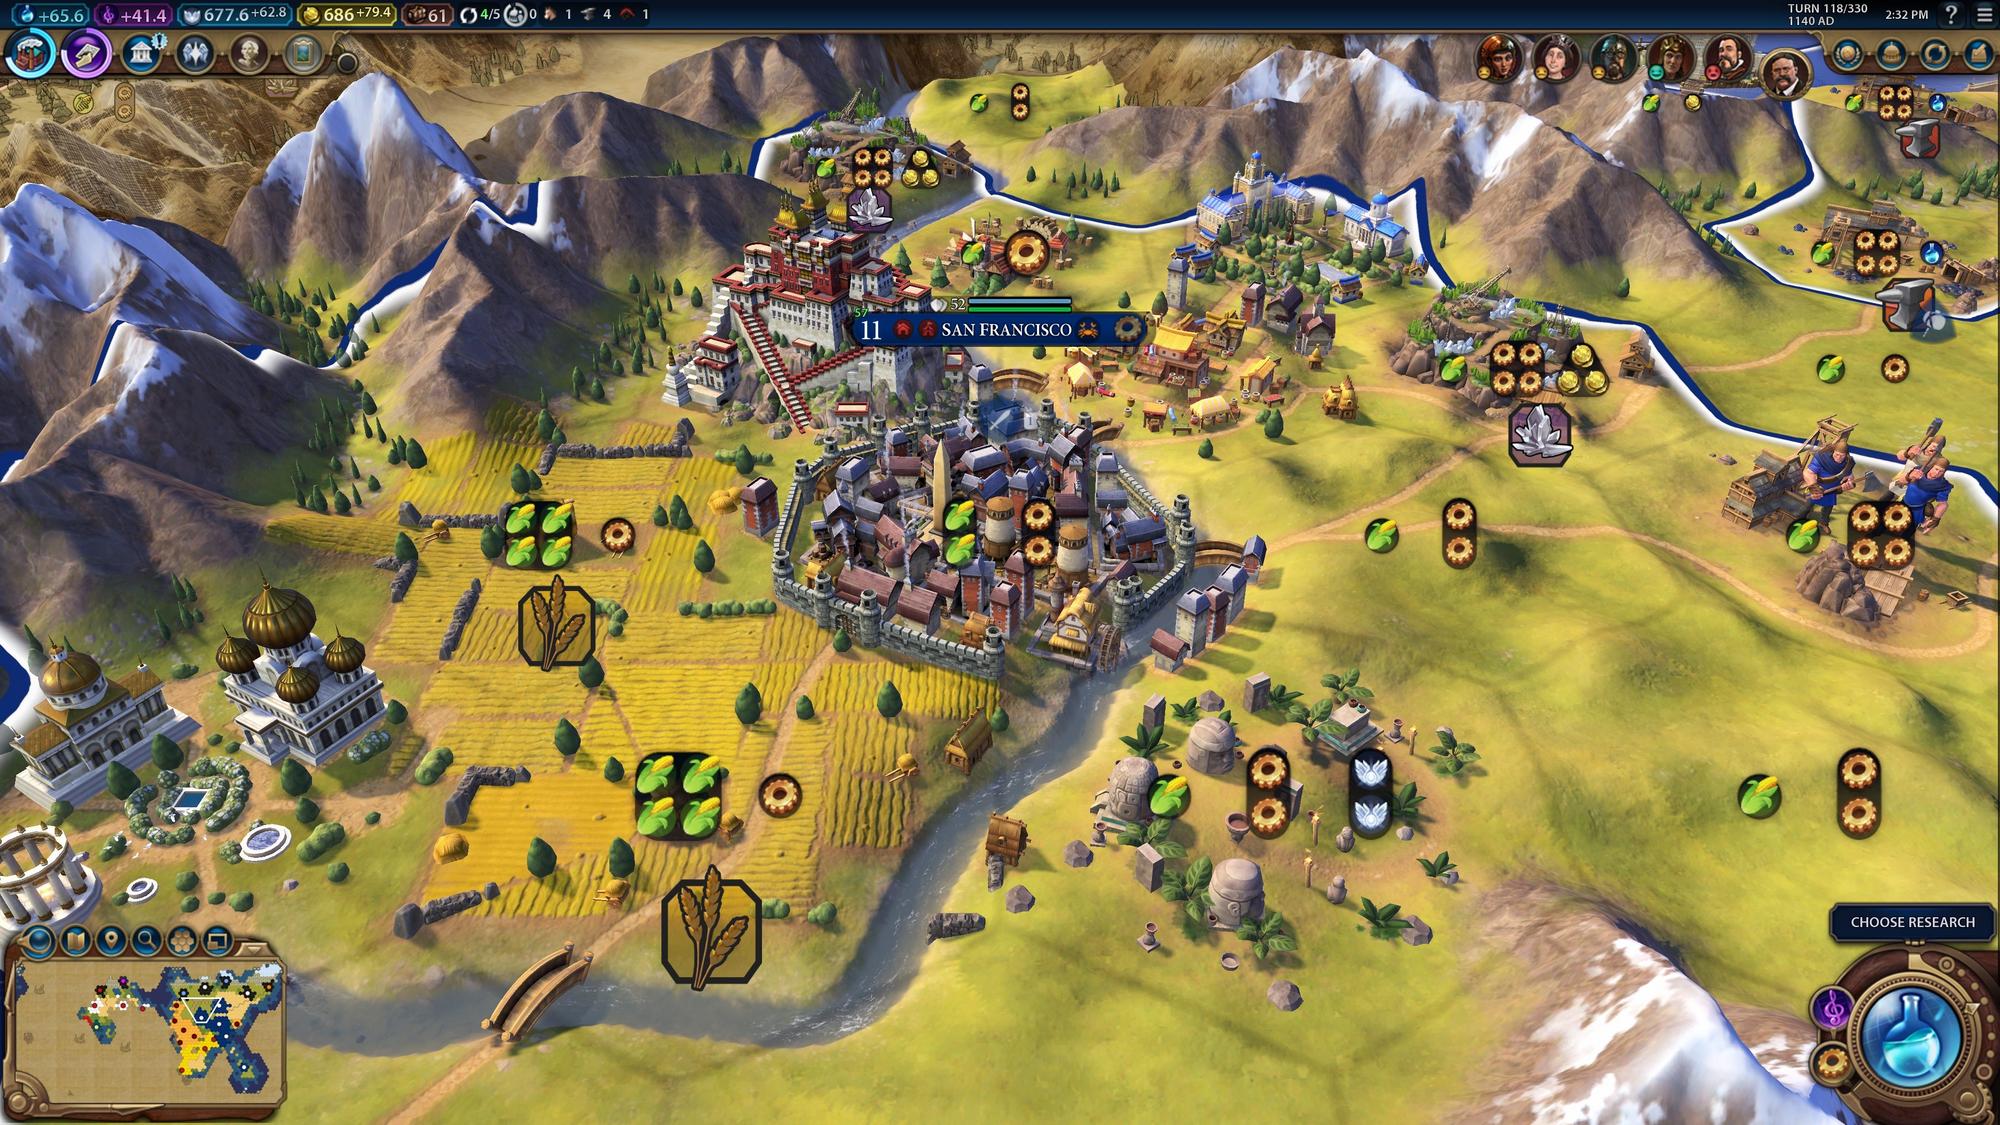 Obrázok z hry Civilization VI.